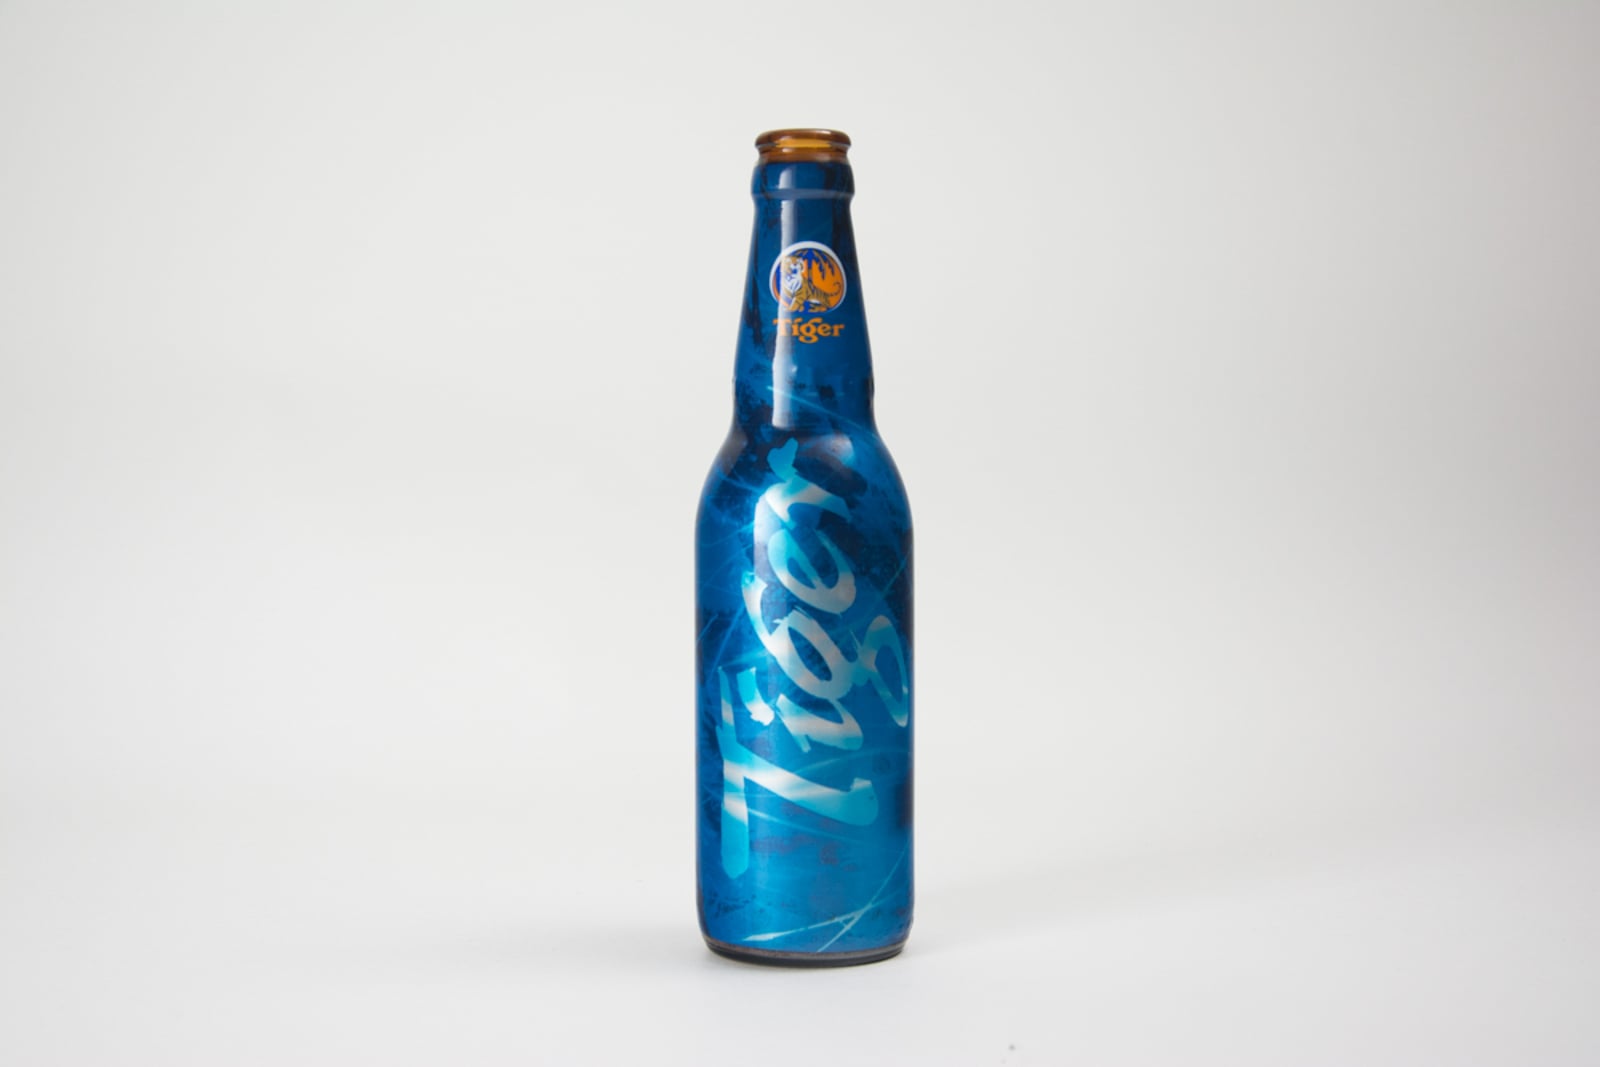 Tiger Beer Bottle In Blue Wrap With Leaf Design